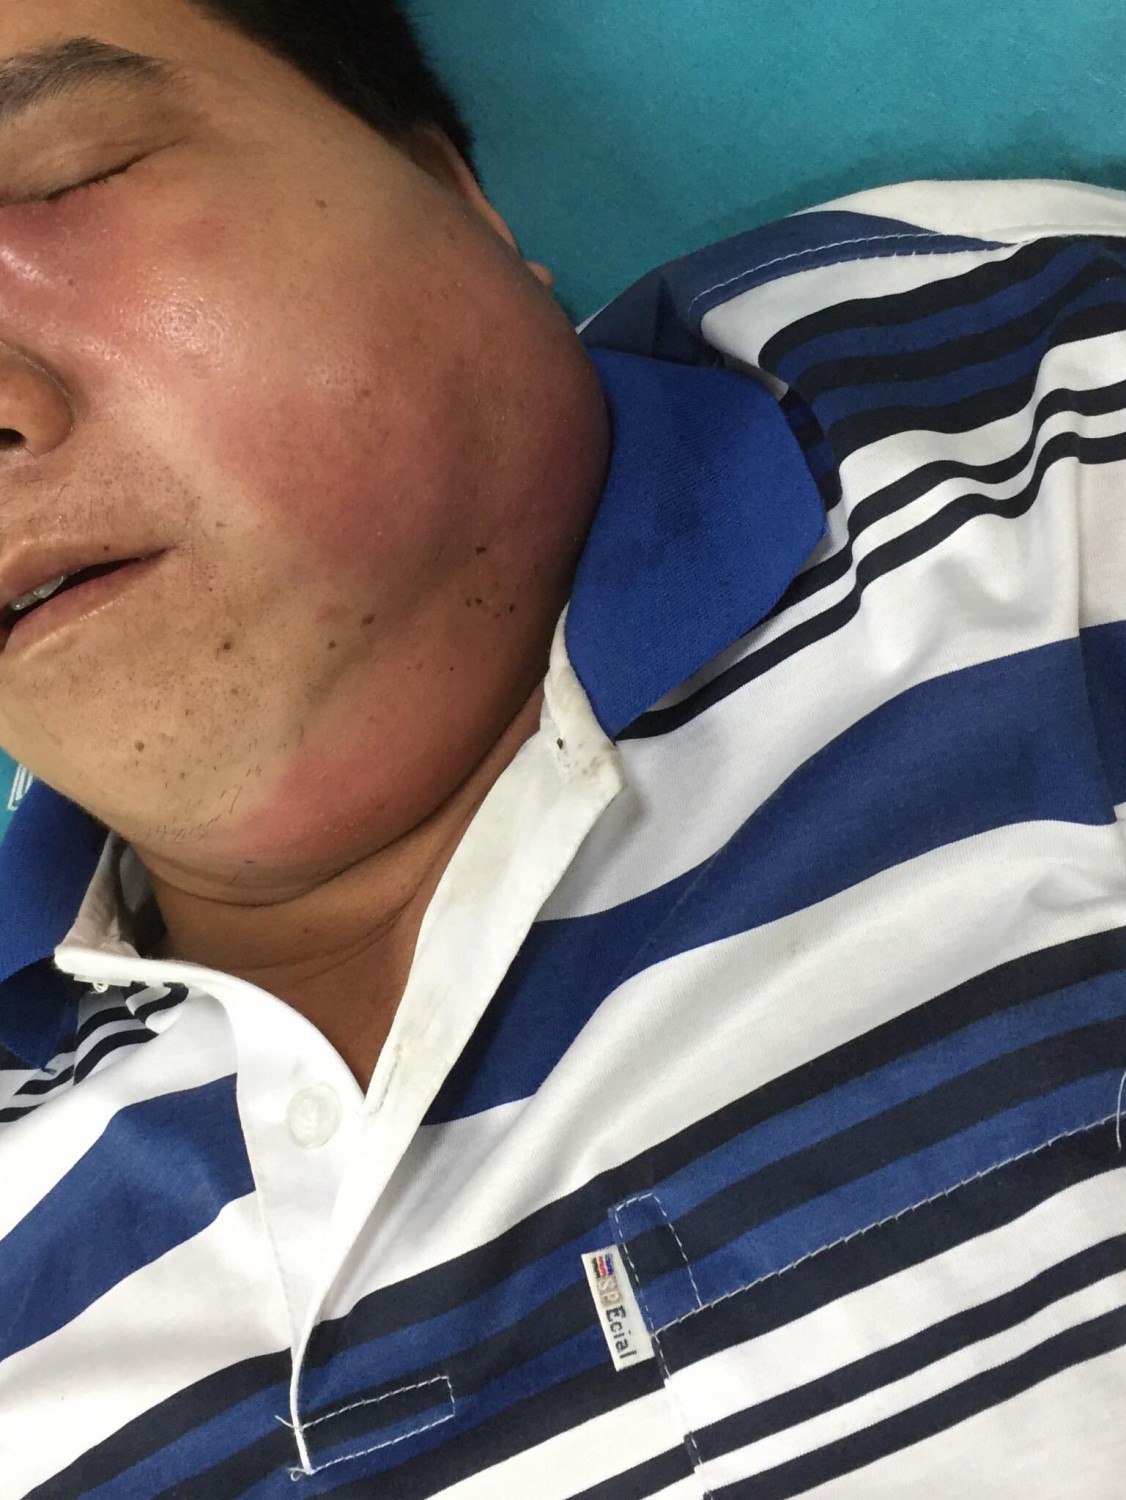 bệnh nhân bị biến dạng khuôn mặt vì tự ý chữa viêm họng tại nhà  2